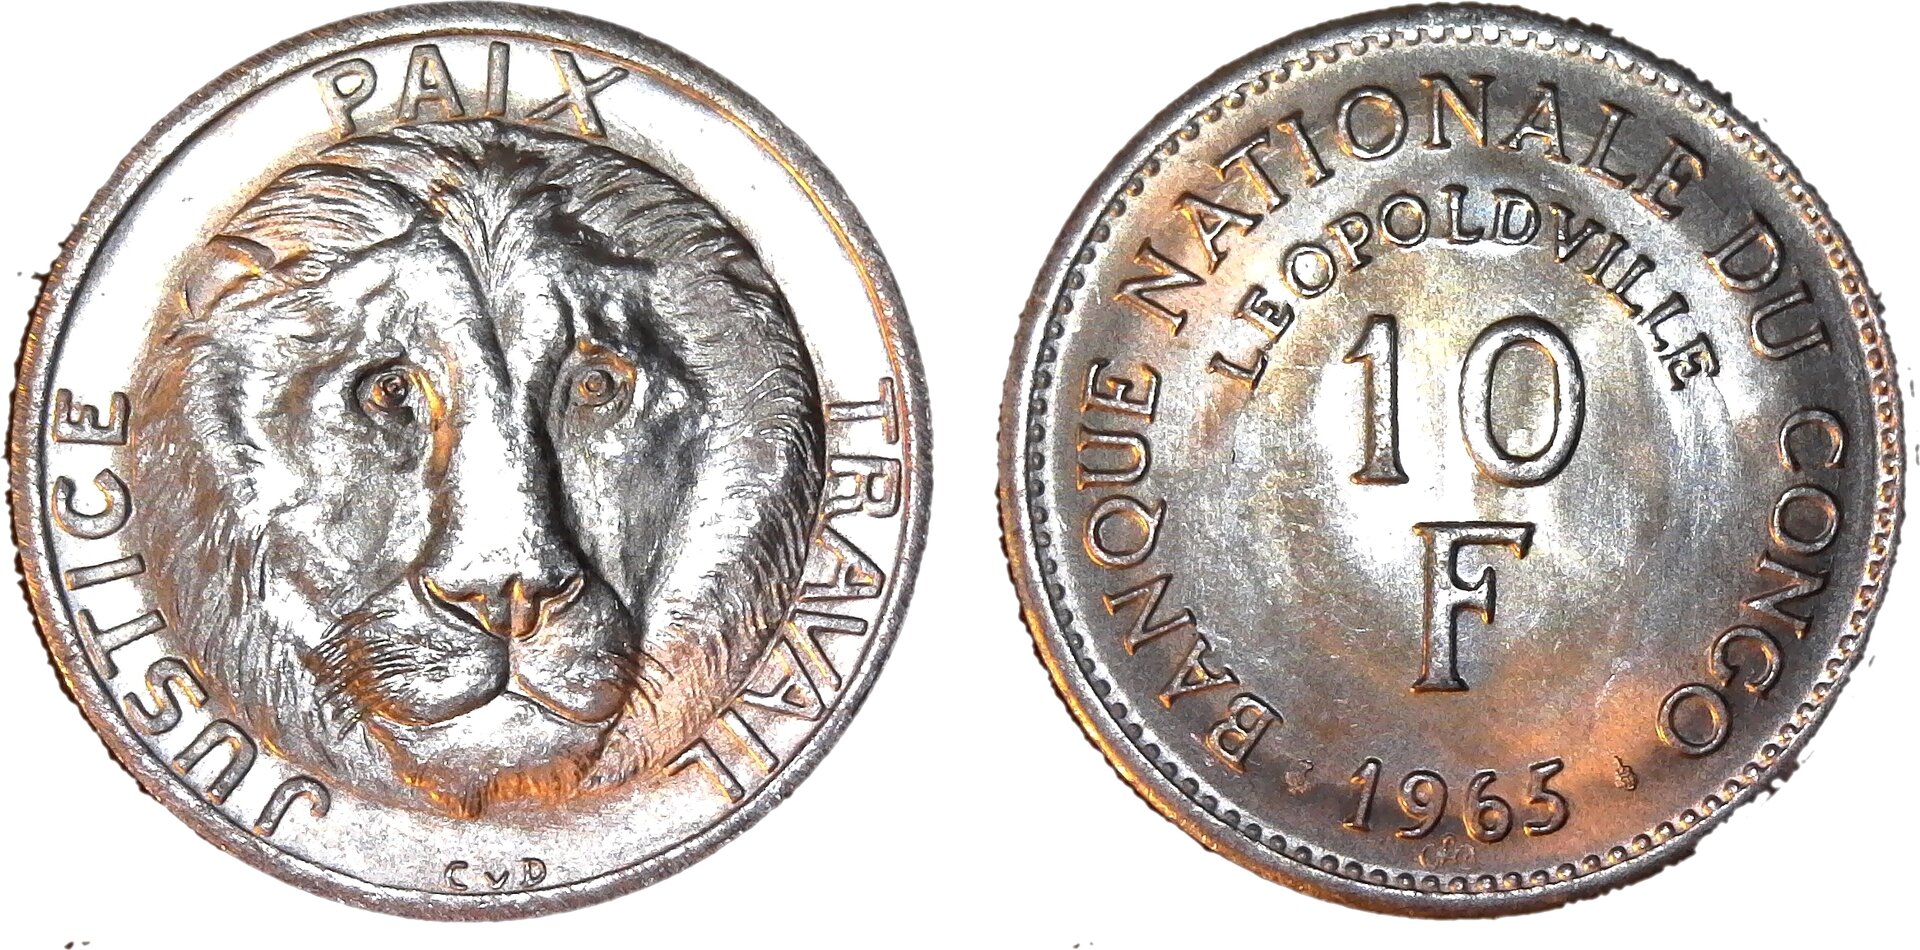 Congo 10 Francs 1965 obv-side-cutout.jpg